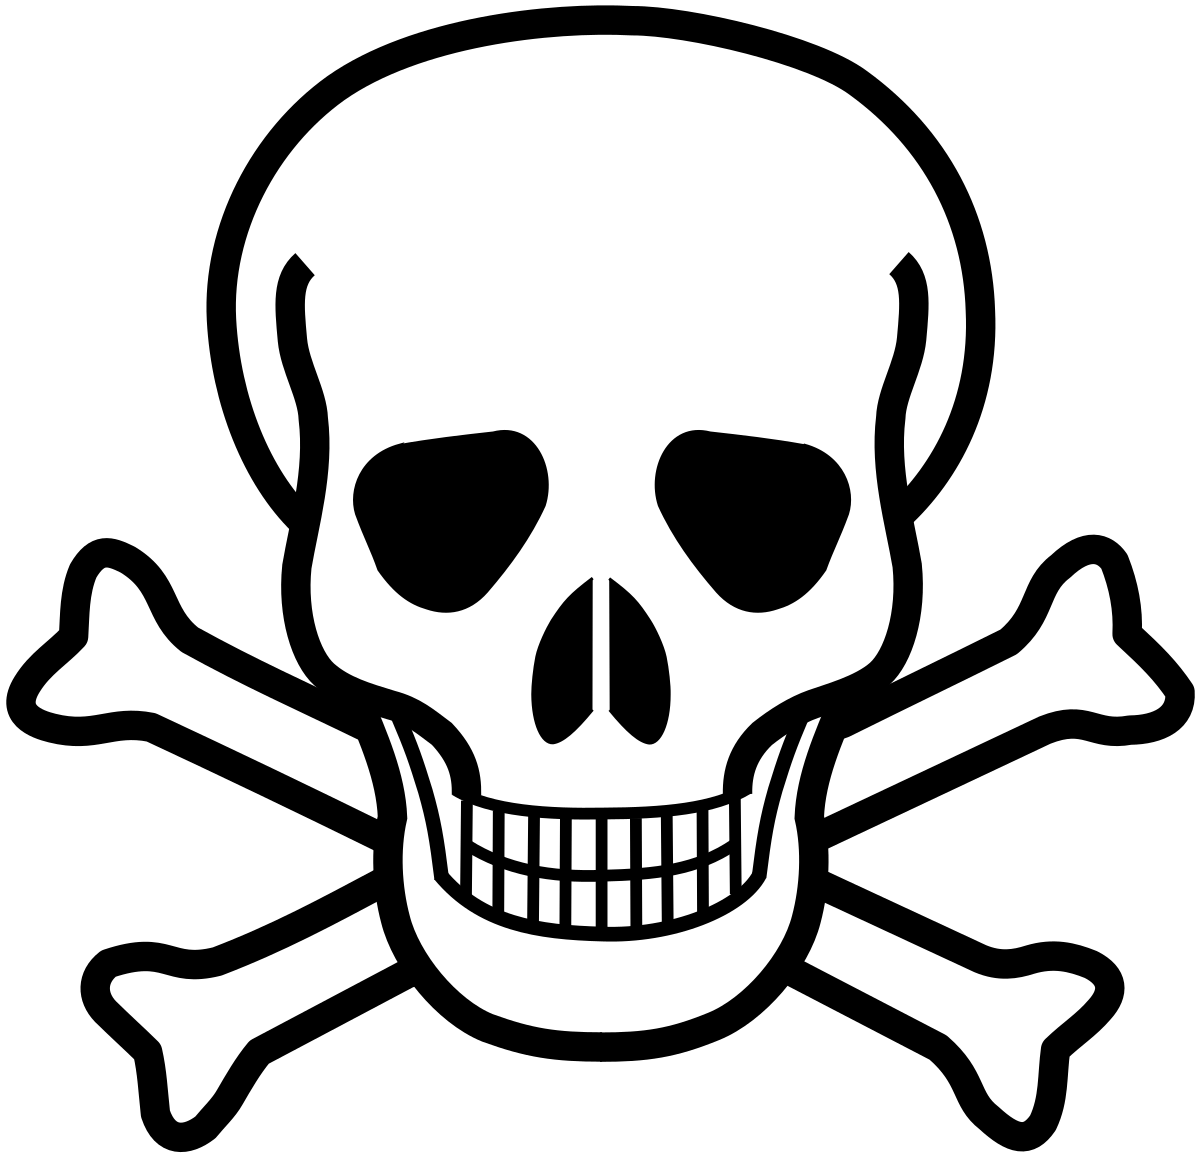 Crossbones Logo - Skull and crossbones (symbol)